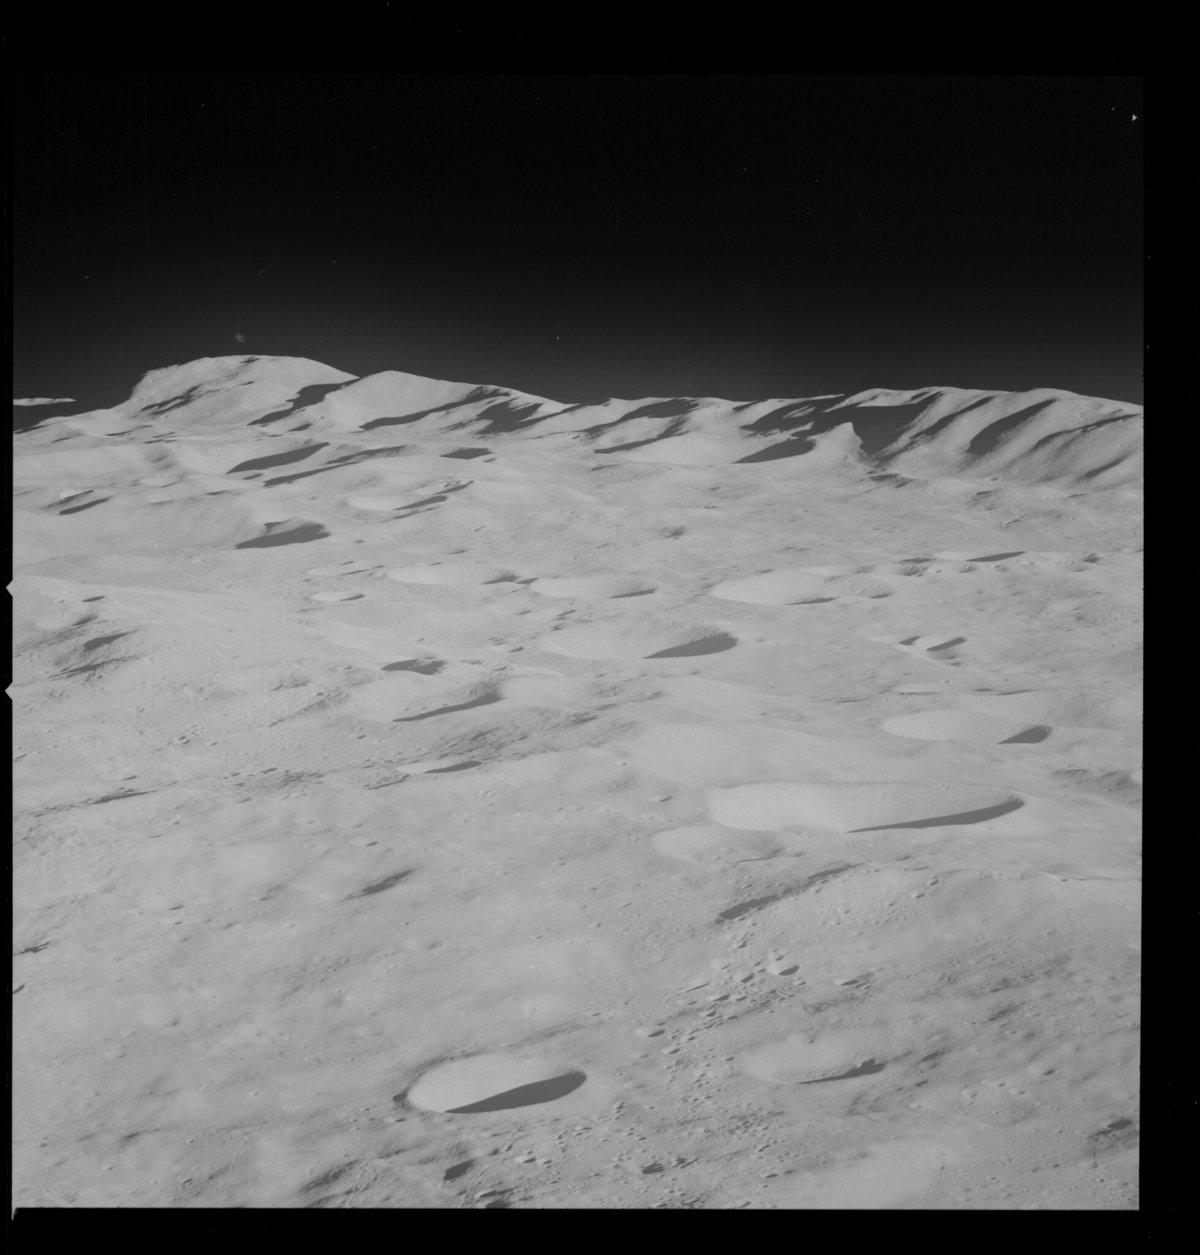 Photo prise au téléobjectif pour documenter le relief lunaire, prise par l'équipage d'Apollo 8 © NASA